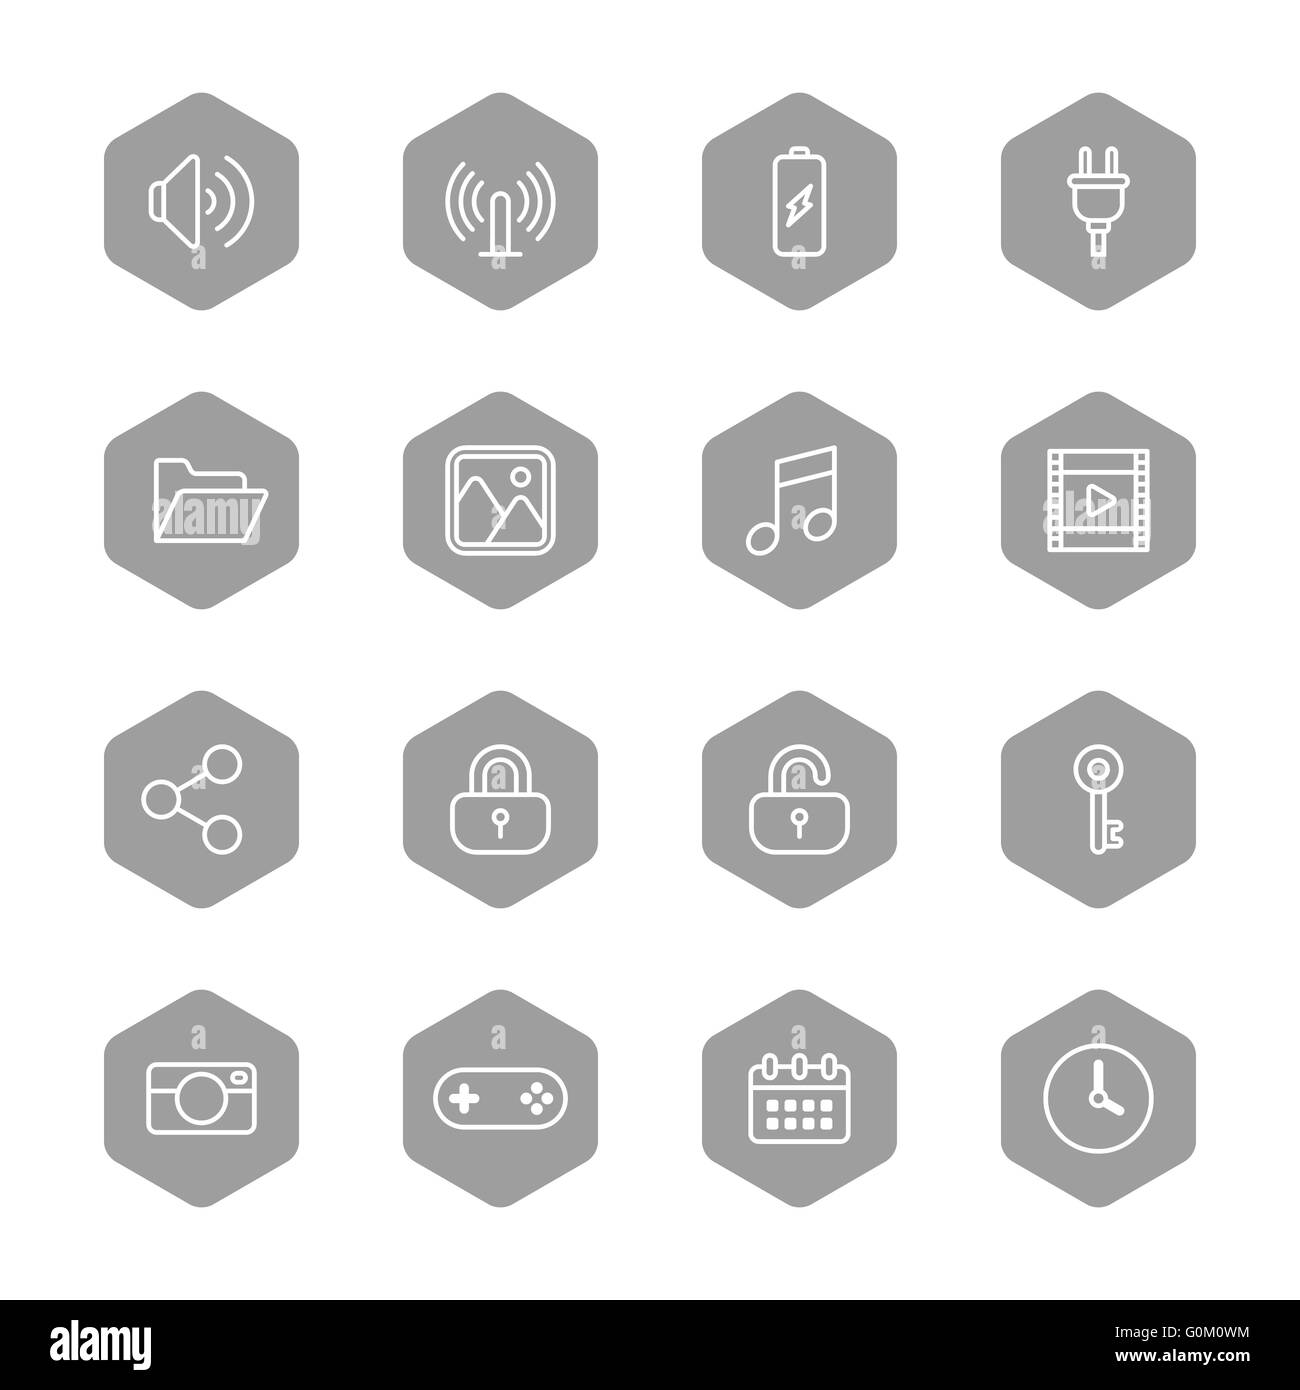 [JPEG] ligne web icon set sur hexagone gris pour le web, l'interface utilisateur, l'infographie et des applications mobiles Banque D'Images